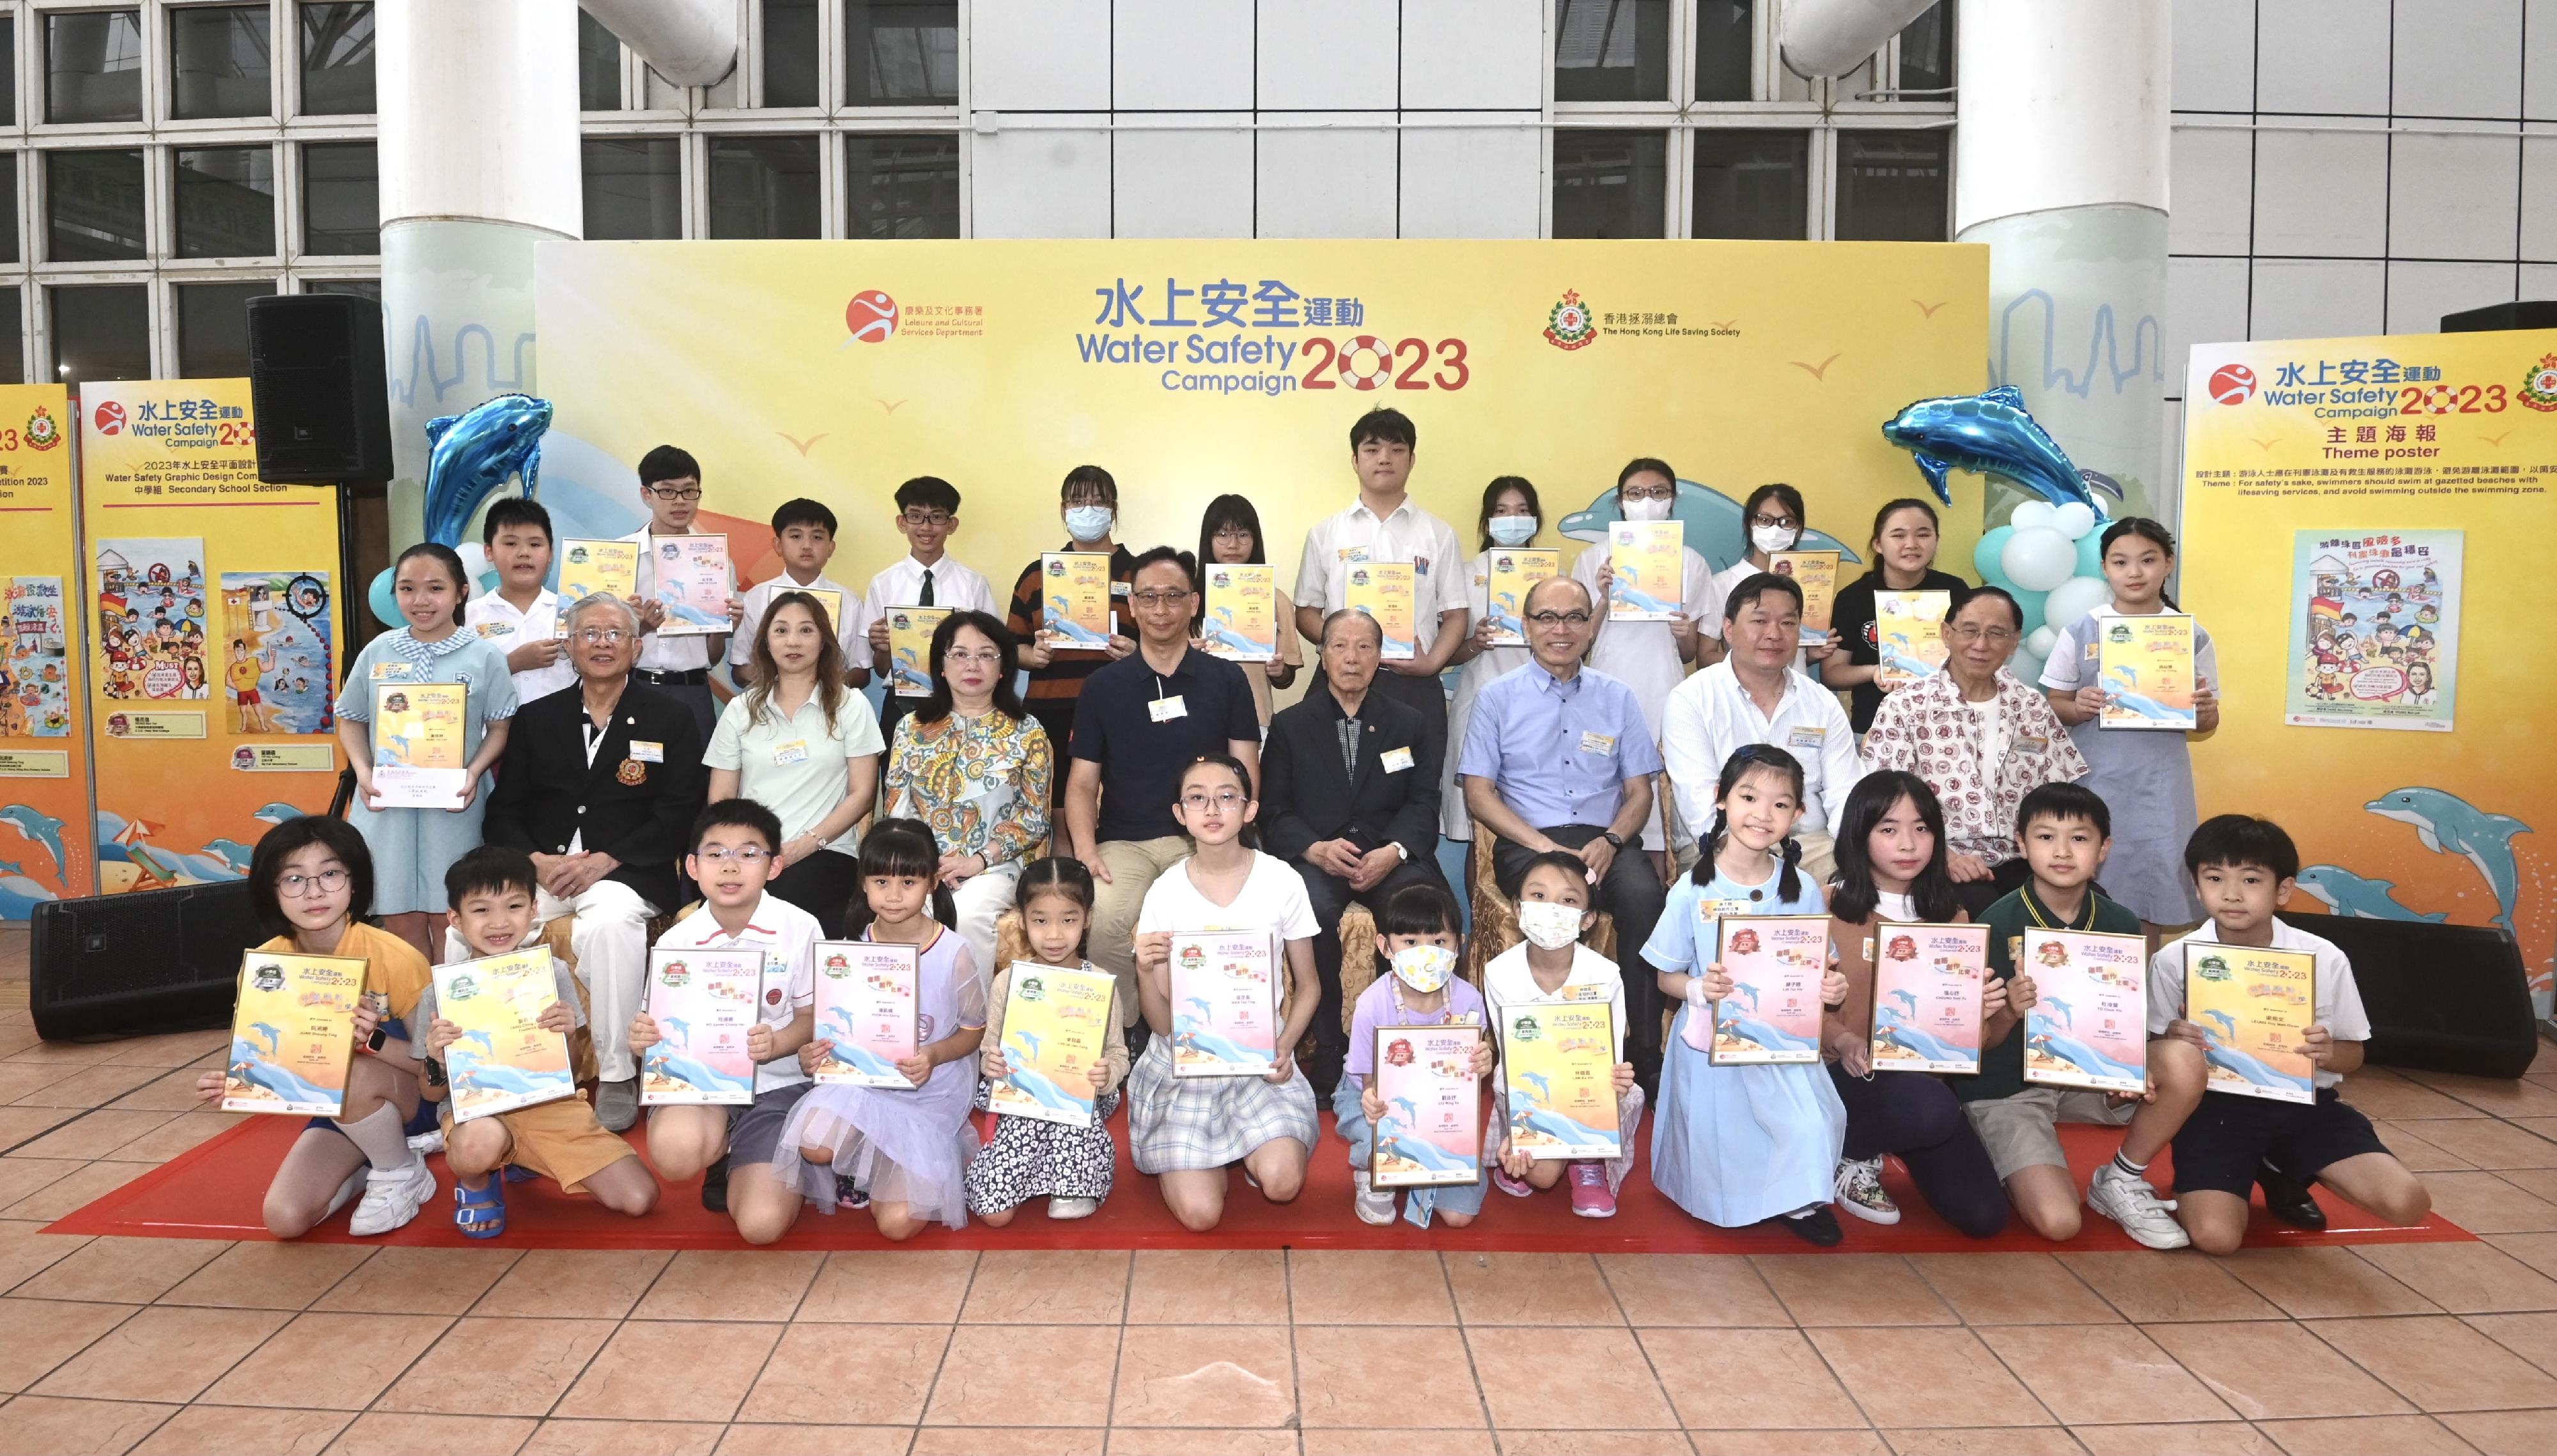 康樂及文化事務署與香港拯溺總會合辦的「二○二三年水上安全運動」標語創作和平面設計比賽今日（六月二十四日）舉行頒獎典禮。圖示主禮嘉賓與兩項比賽的得獎同學合照。

